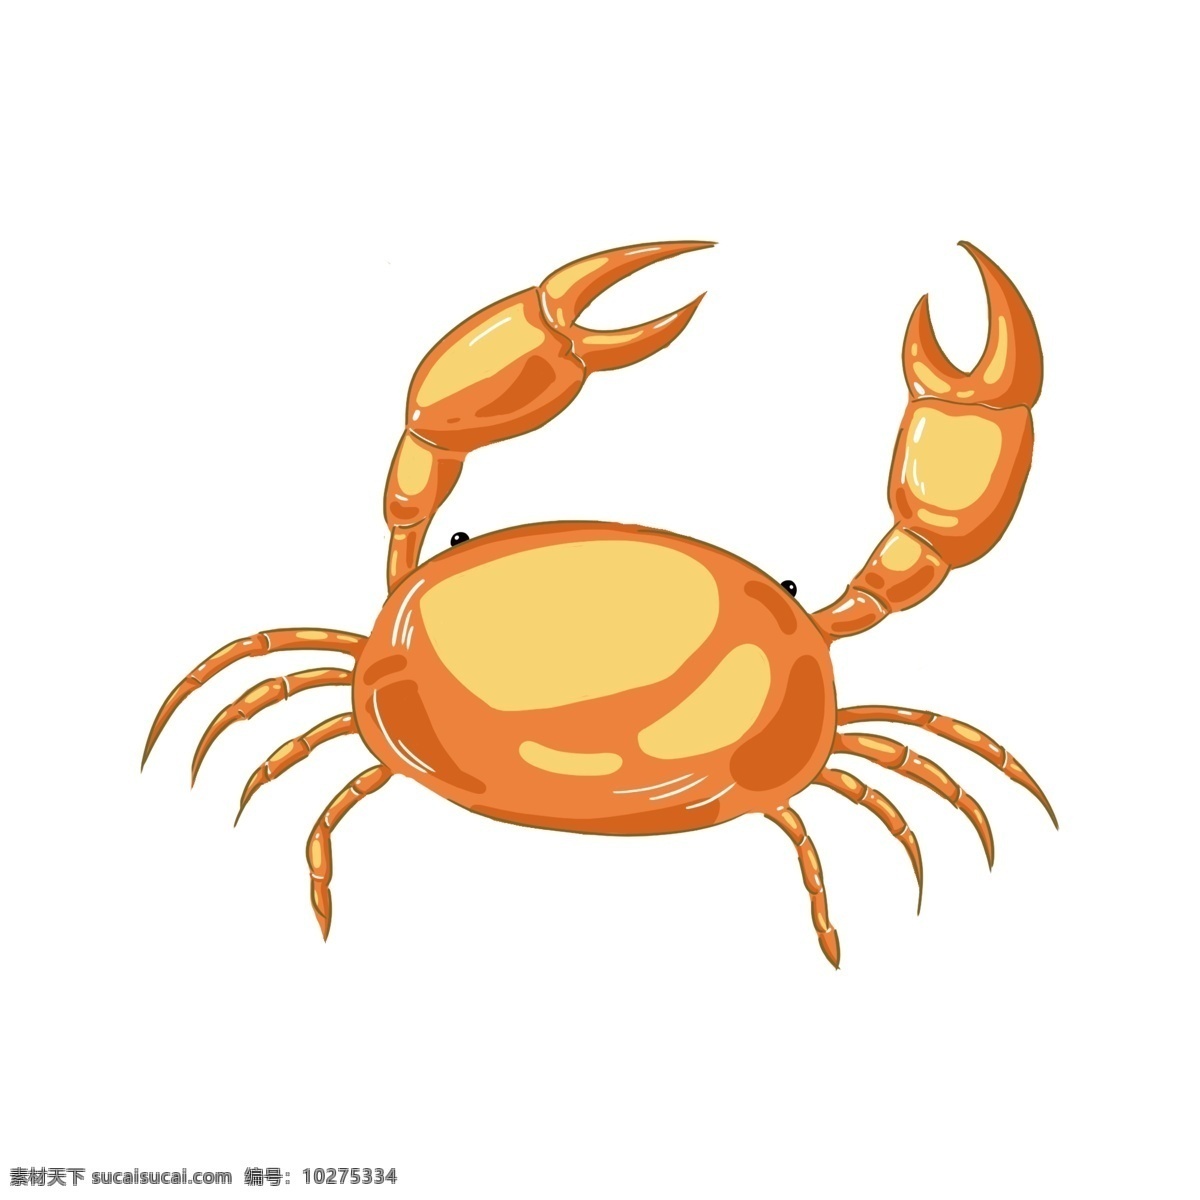 手绘 卡通 黄色 螃蟹 插画 手绘螃蟹 卡通螃蟹插画 黄色的螃蟹 美味的螃蟹 爬行动物 海洋动物 海鲜 美食